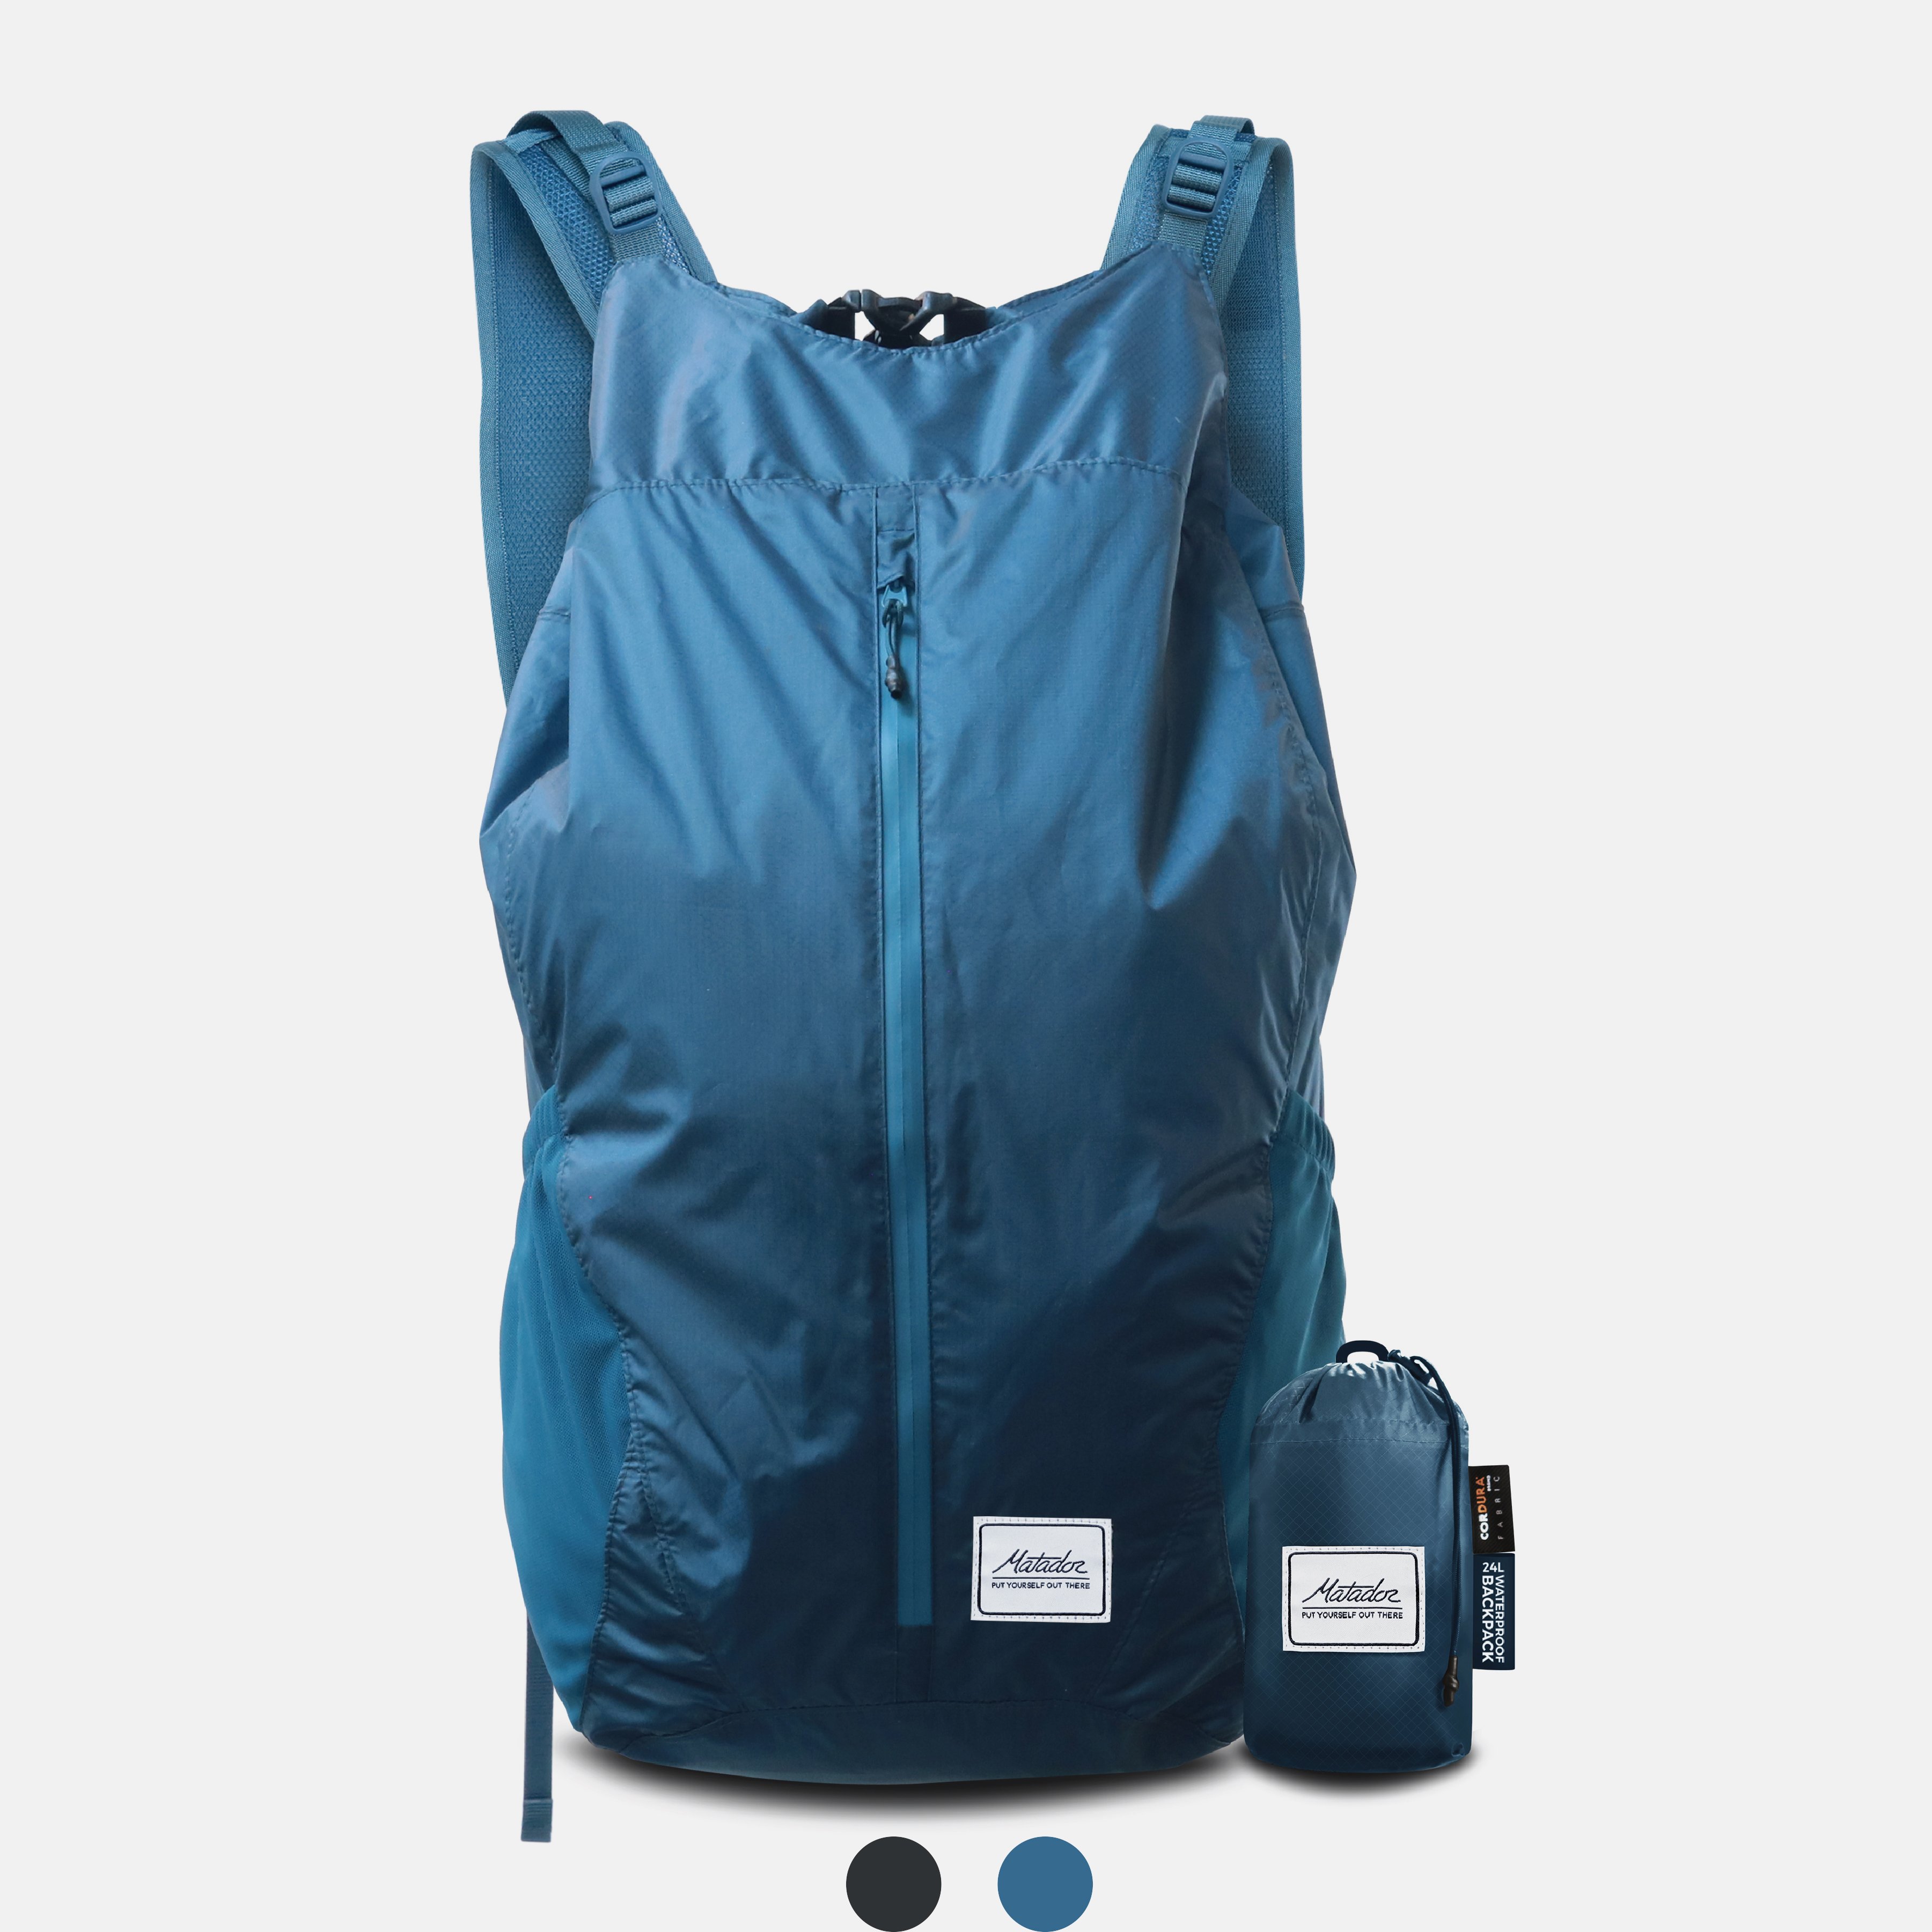 ├登山樂┤美國 Matador FreeRain24 Packable Backpack 24L 旅遊包-孔雀藍 # MATFR24001B